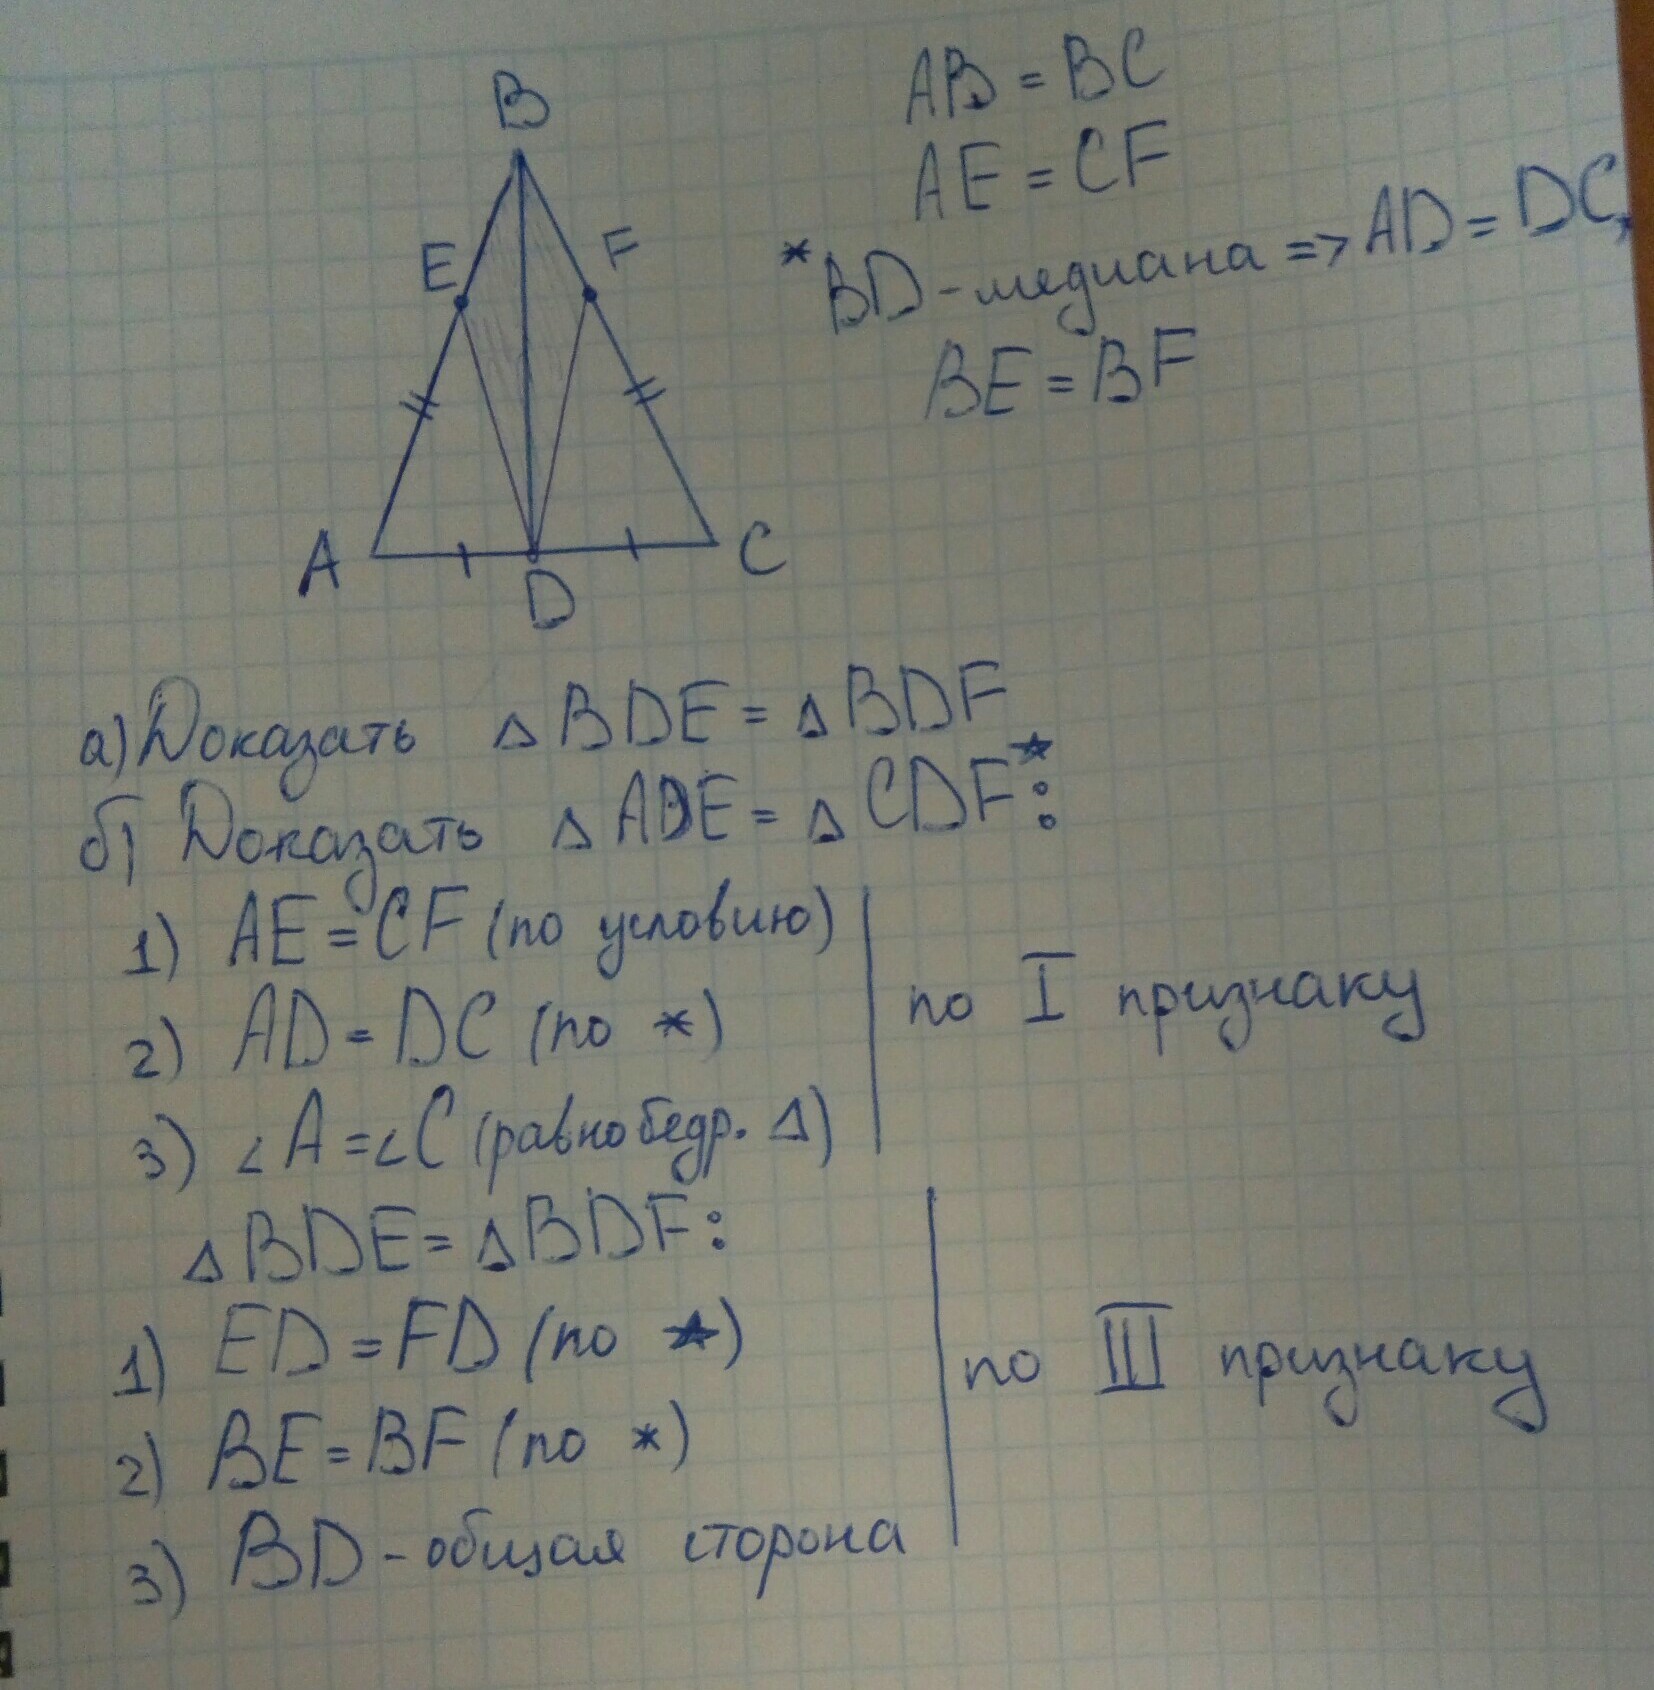 Равнобедренный треугольник авс ас св. Треугольник ABC С основанием AC. В равнобедренном треугольнике ABC С основанием AC проведена. На основании AC равнобедренного треугольника. Треугольник ABC равнобедренный с основанием ABC.